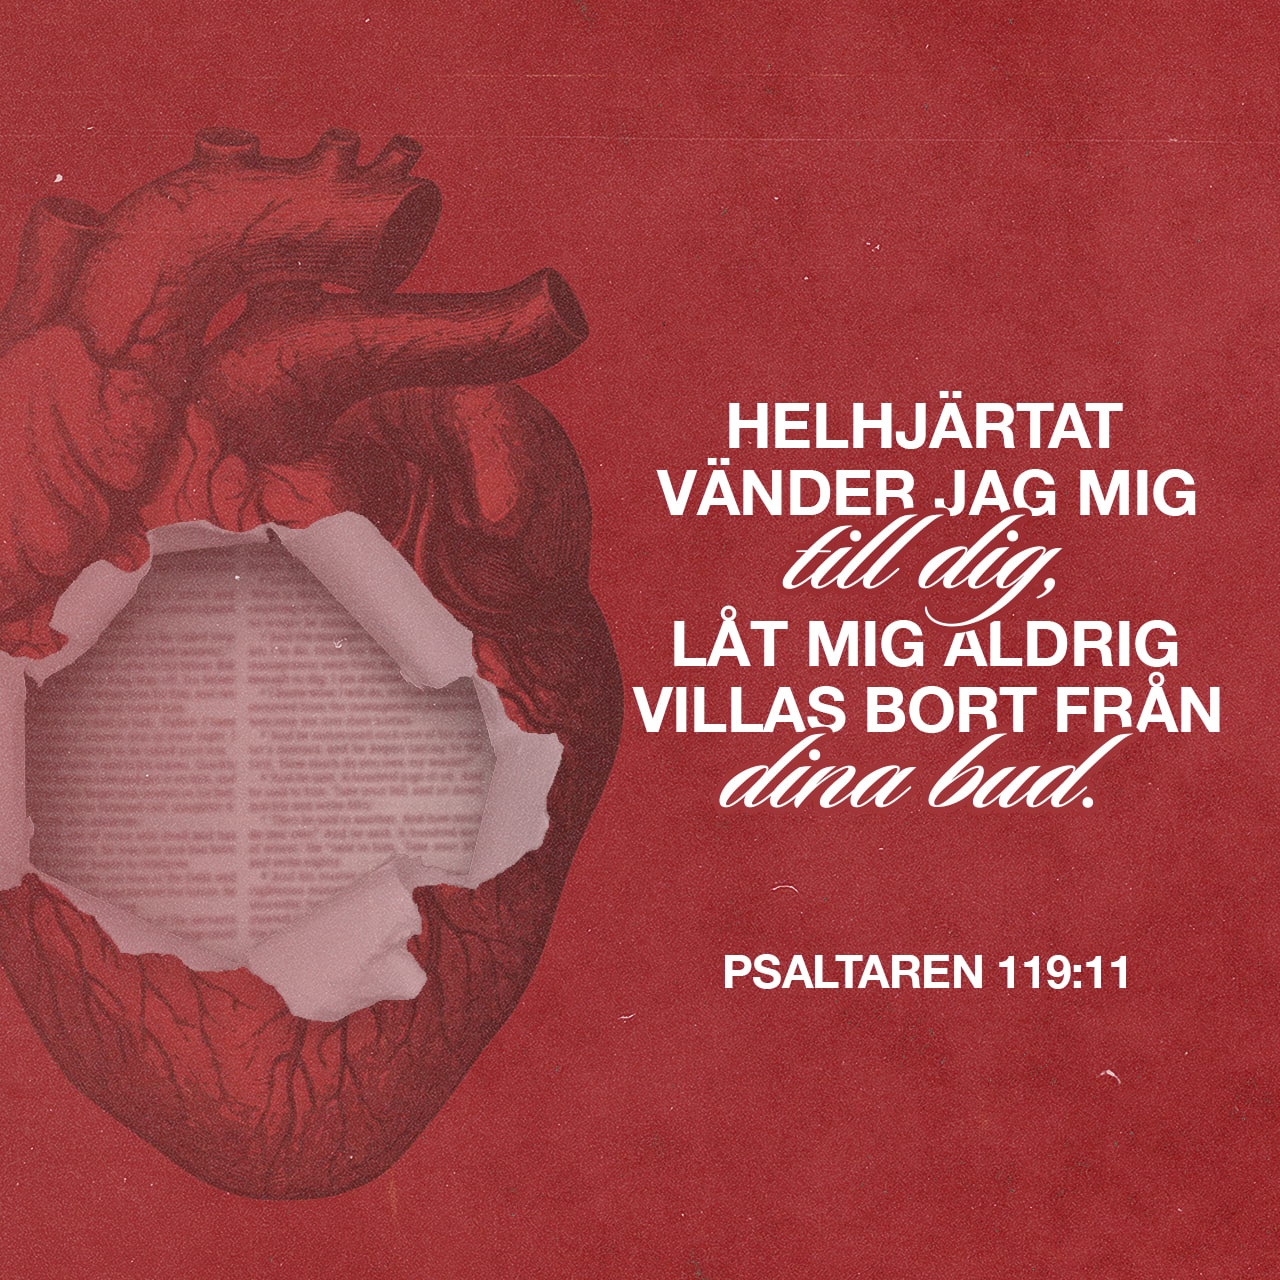 Psaltaren 119:11 - Jag gömmer ditt tal i mitt hjärta,  för att jag icke skall synda mot dig.